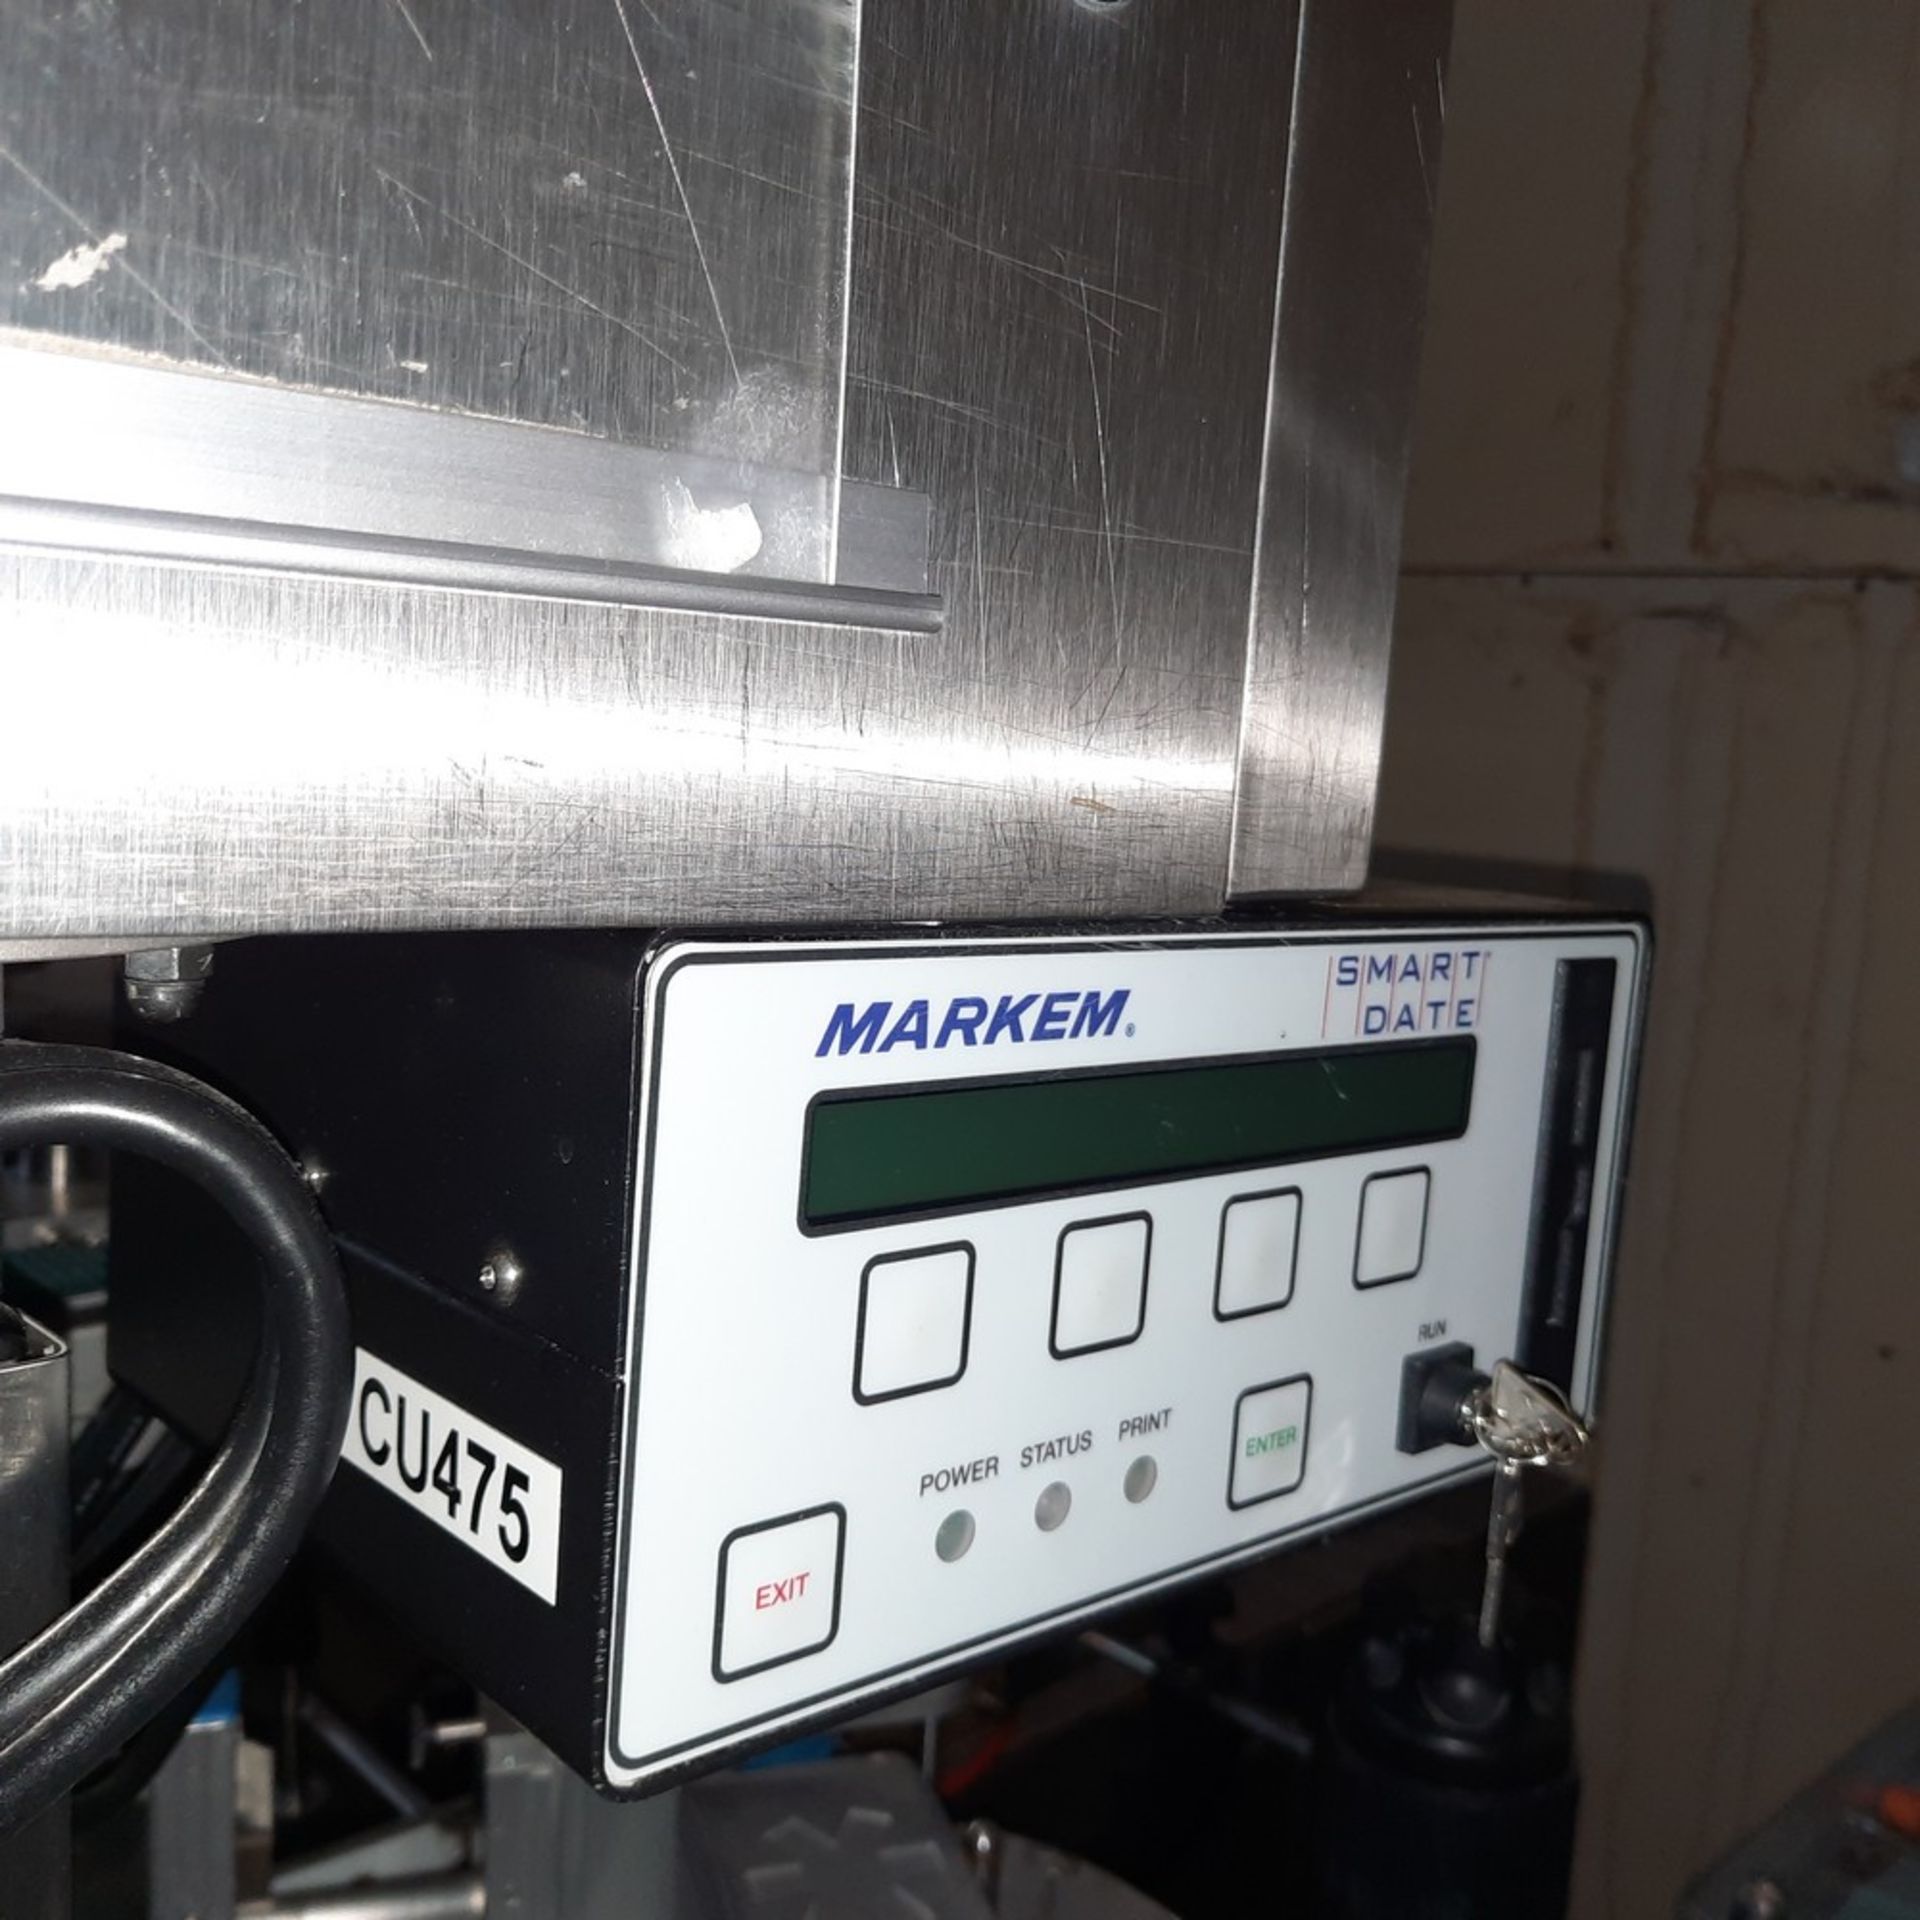 UNI-300 Labeler, 110V / 11A, 90 psi, 2014 - Image 11 of 15